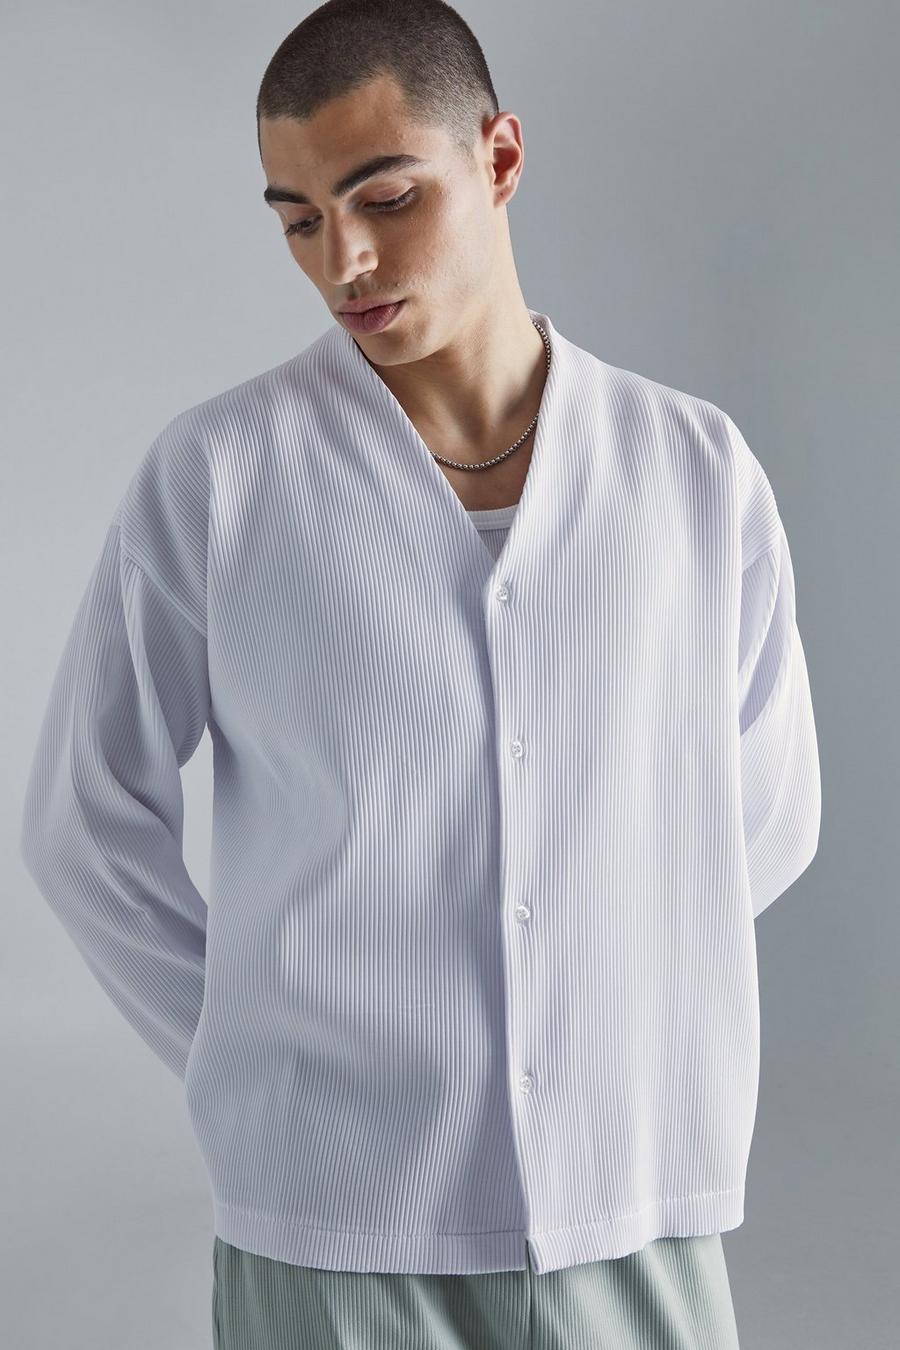 Camisa recta plisada de manga larga, White